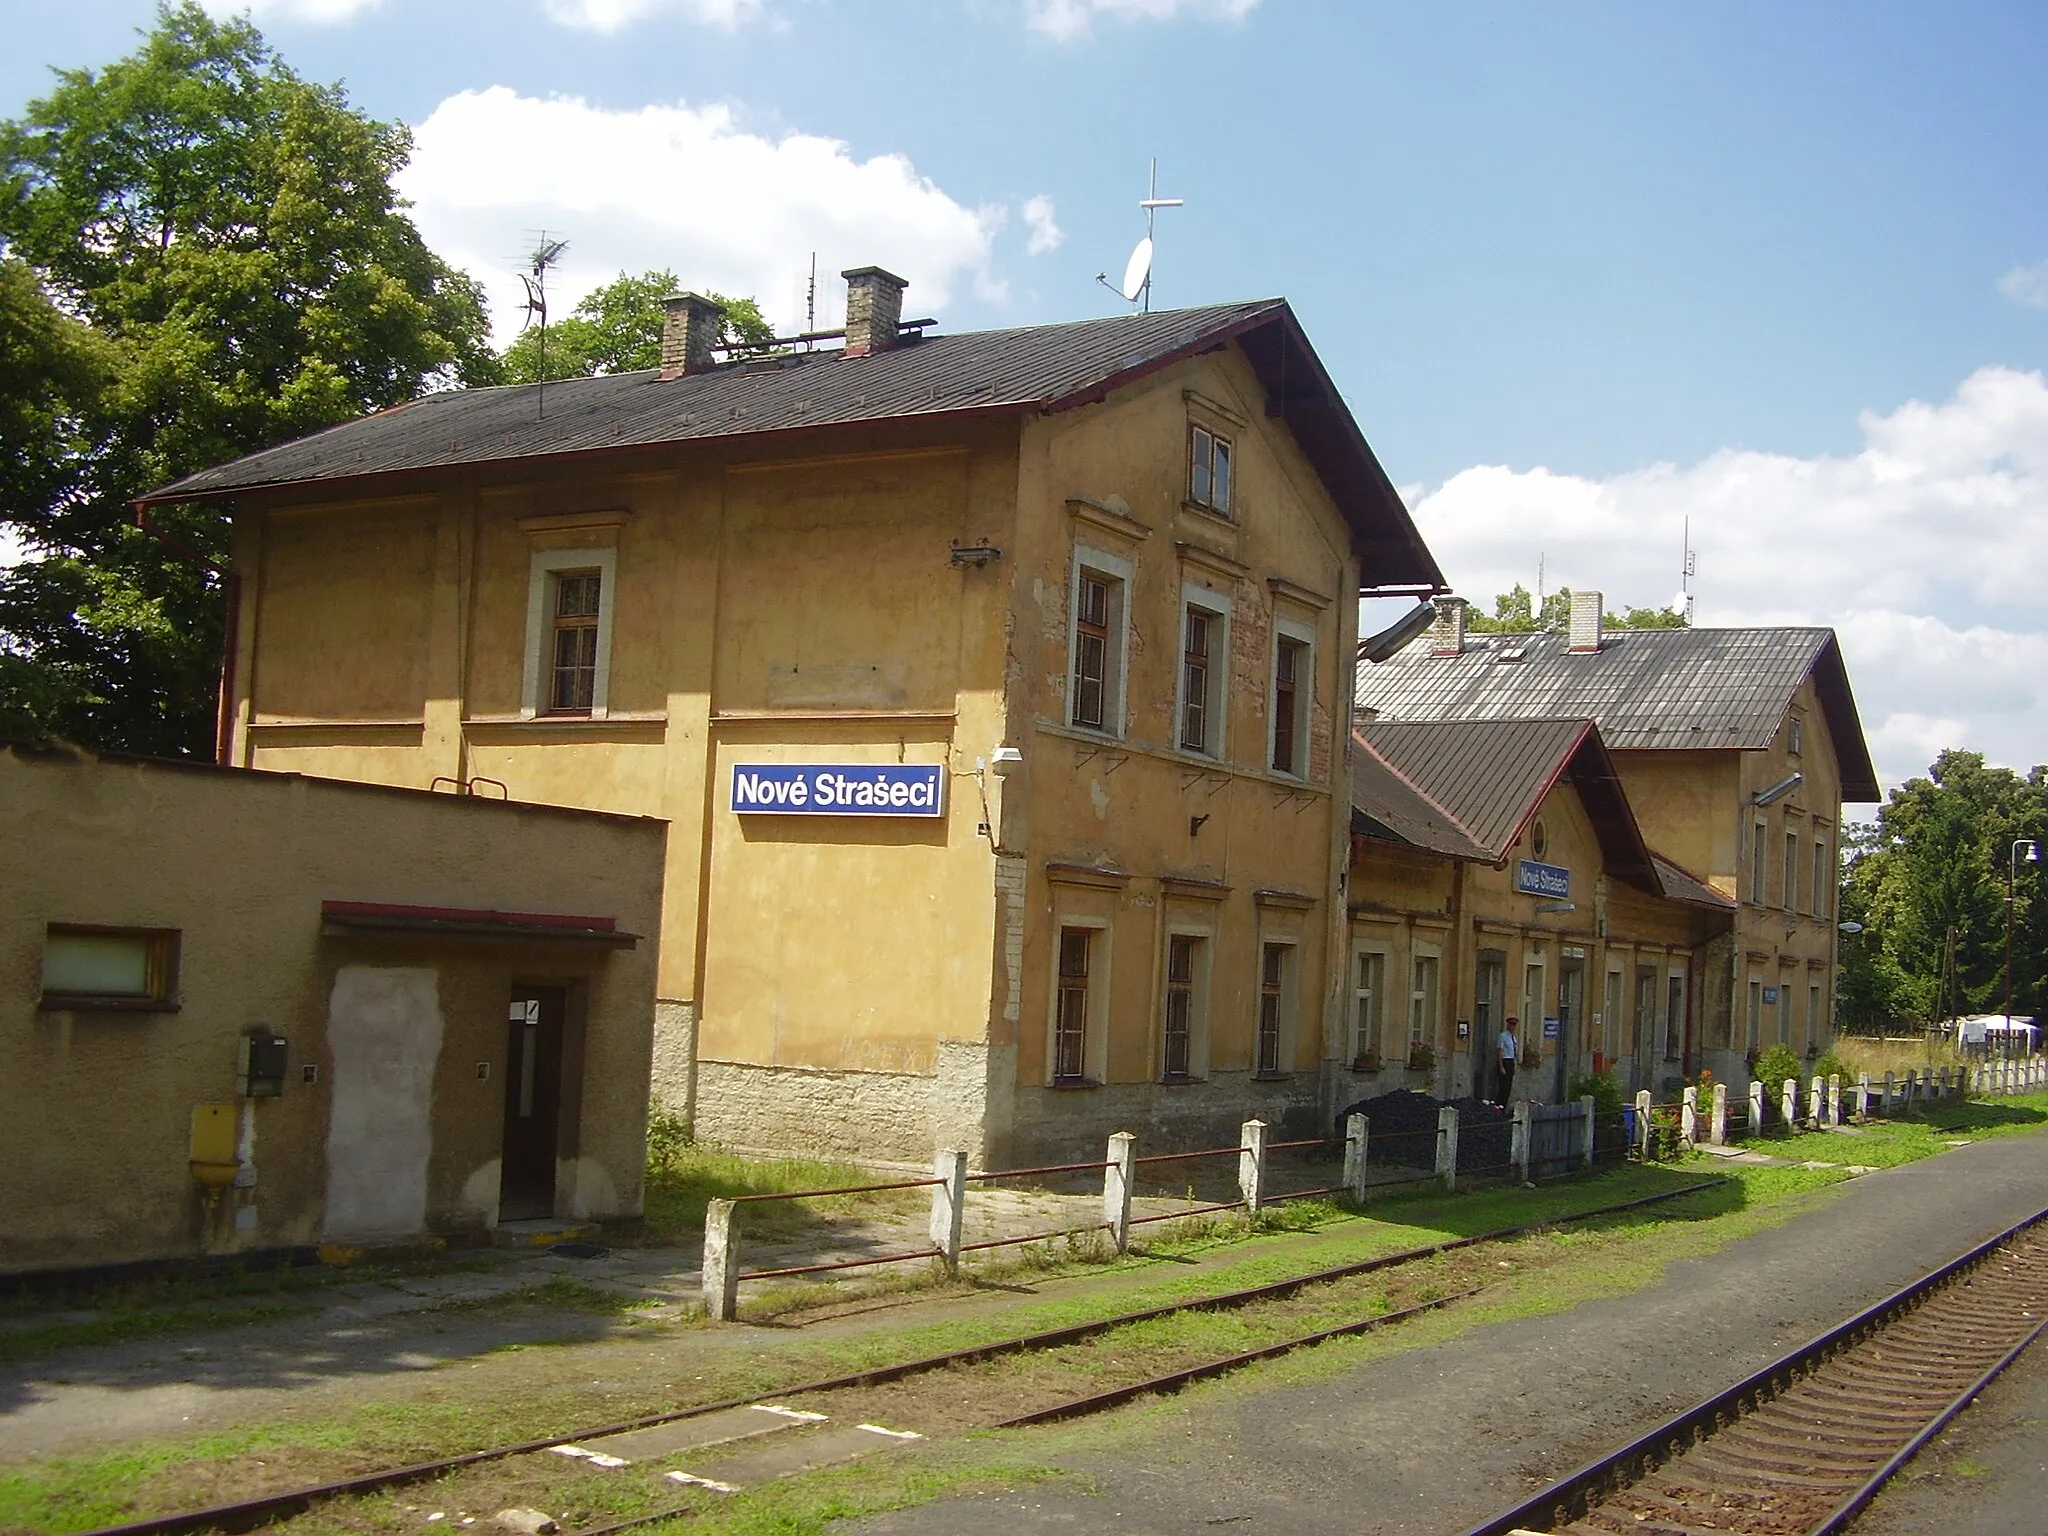 Photo showing: Train station in Nové Strašecí, Central Bohemian Region